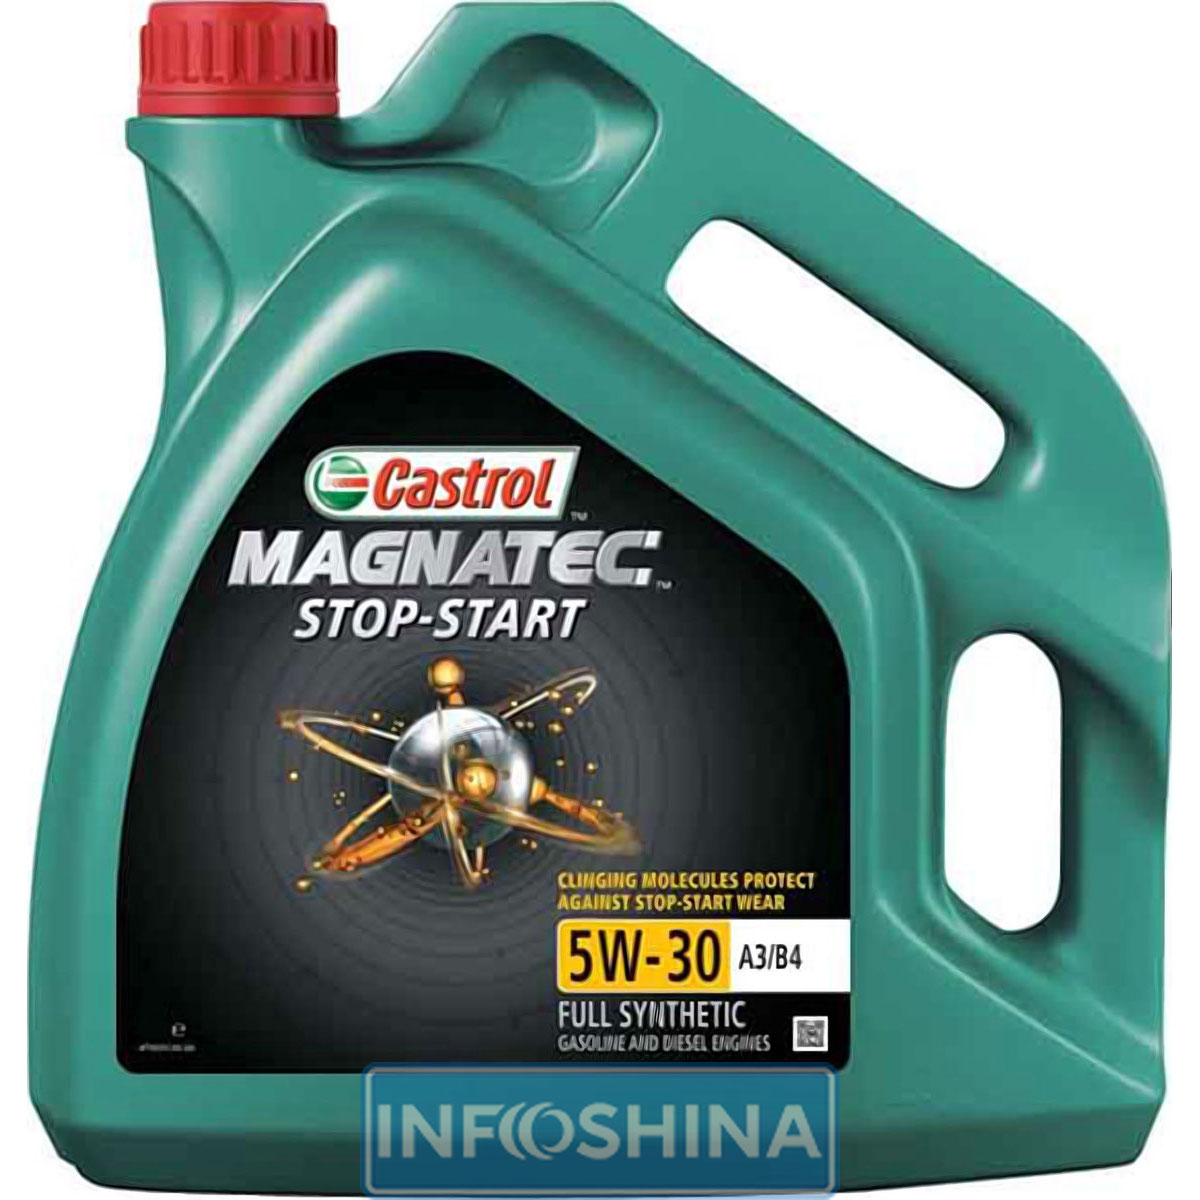 Купить масло Castrol Magnatec Stop-Start 5W-30 A3/B4 (5л)